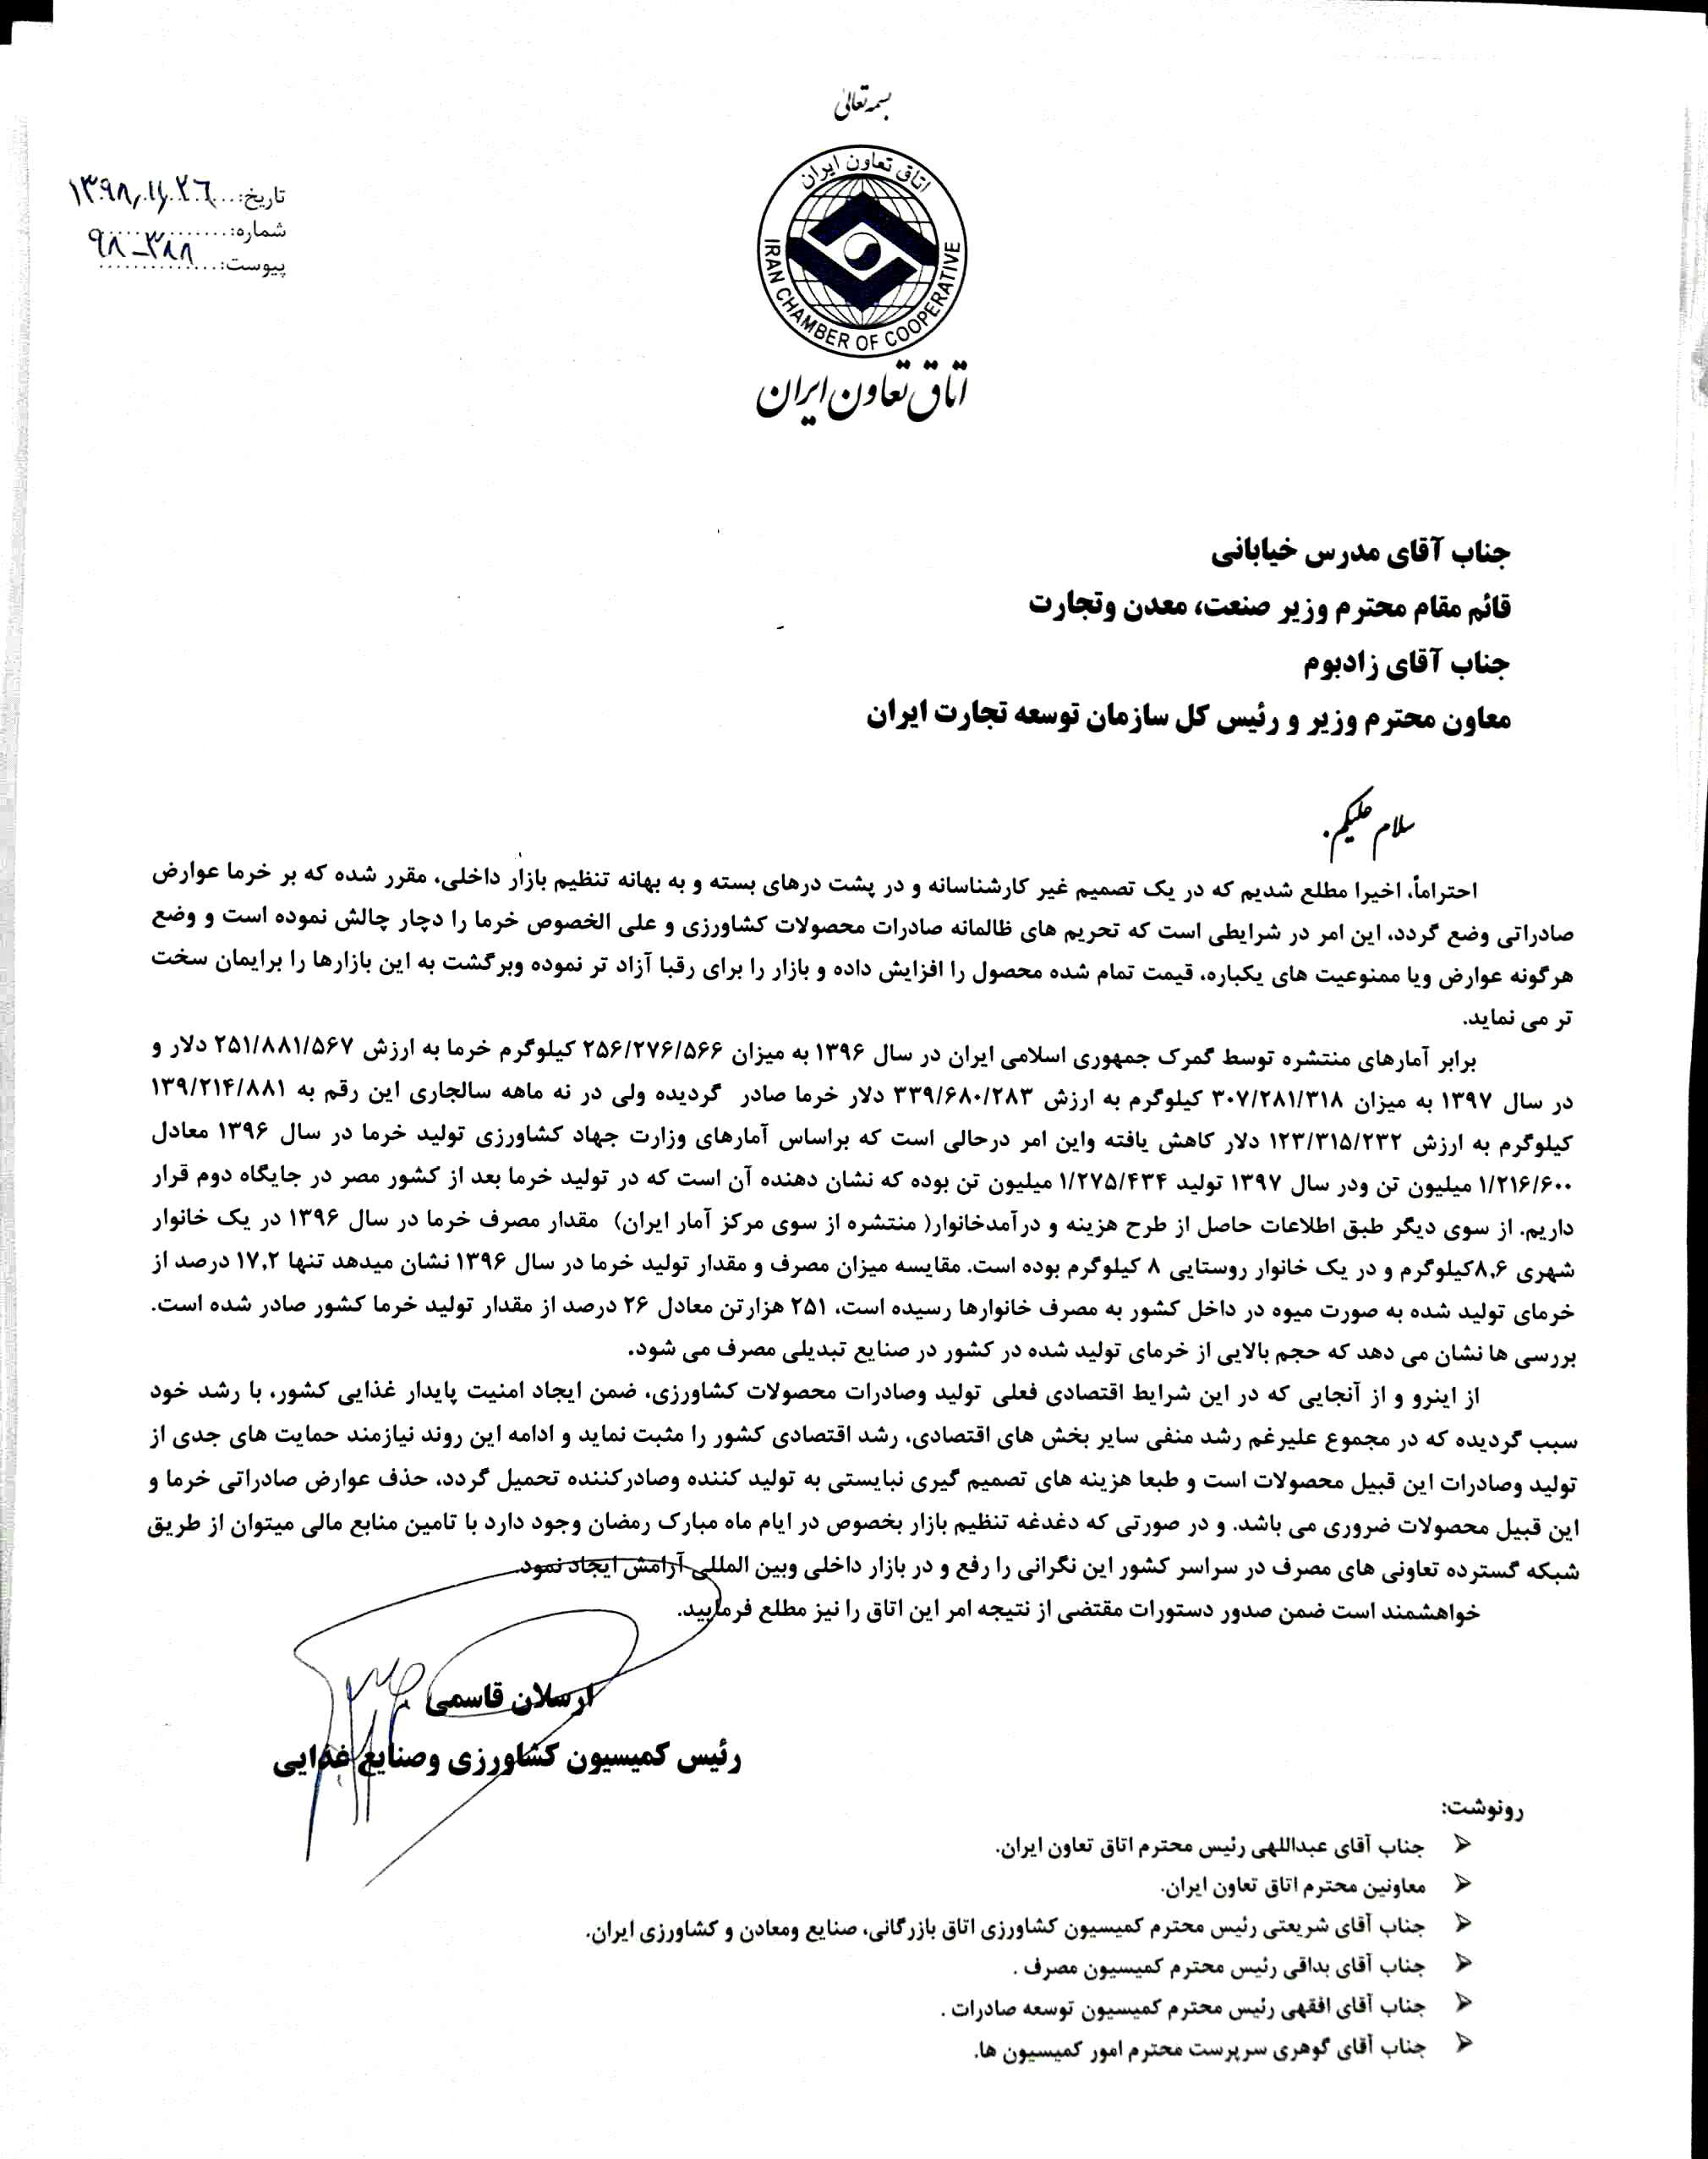 نامه اعتراض آمیز به وزارت صنعت برای وضع عوارض صادراتی خرما